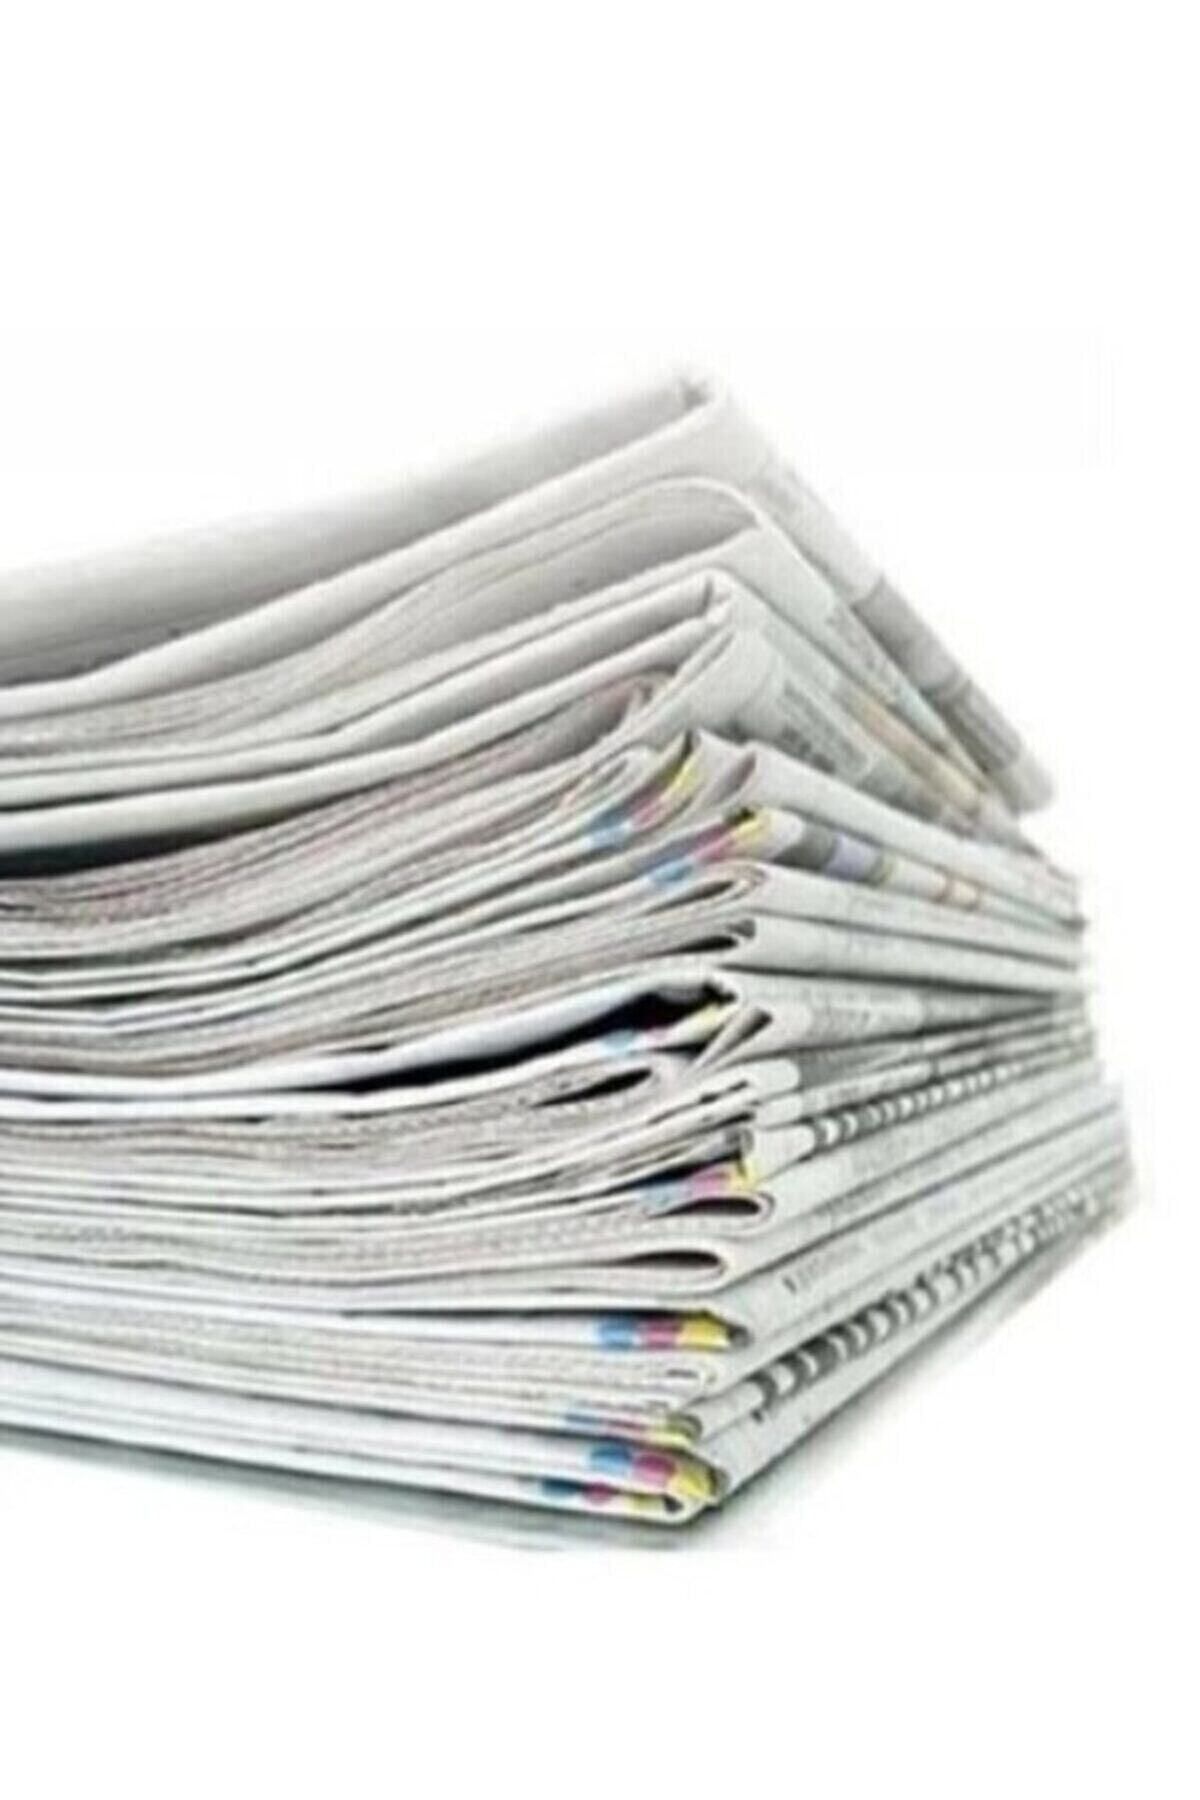 Matbaagraf Eski Gazete 1 Kg Taşınma Gazetesi Temiz Gazete Kağıdı Kağıt Gazete